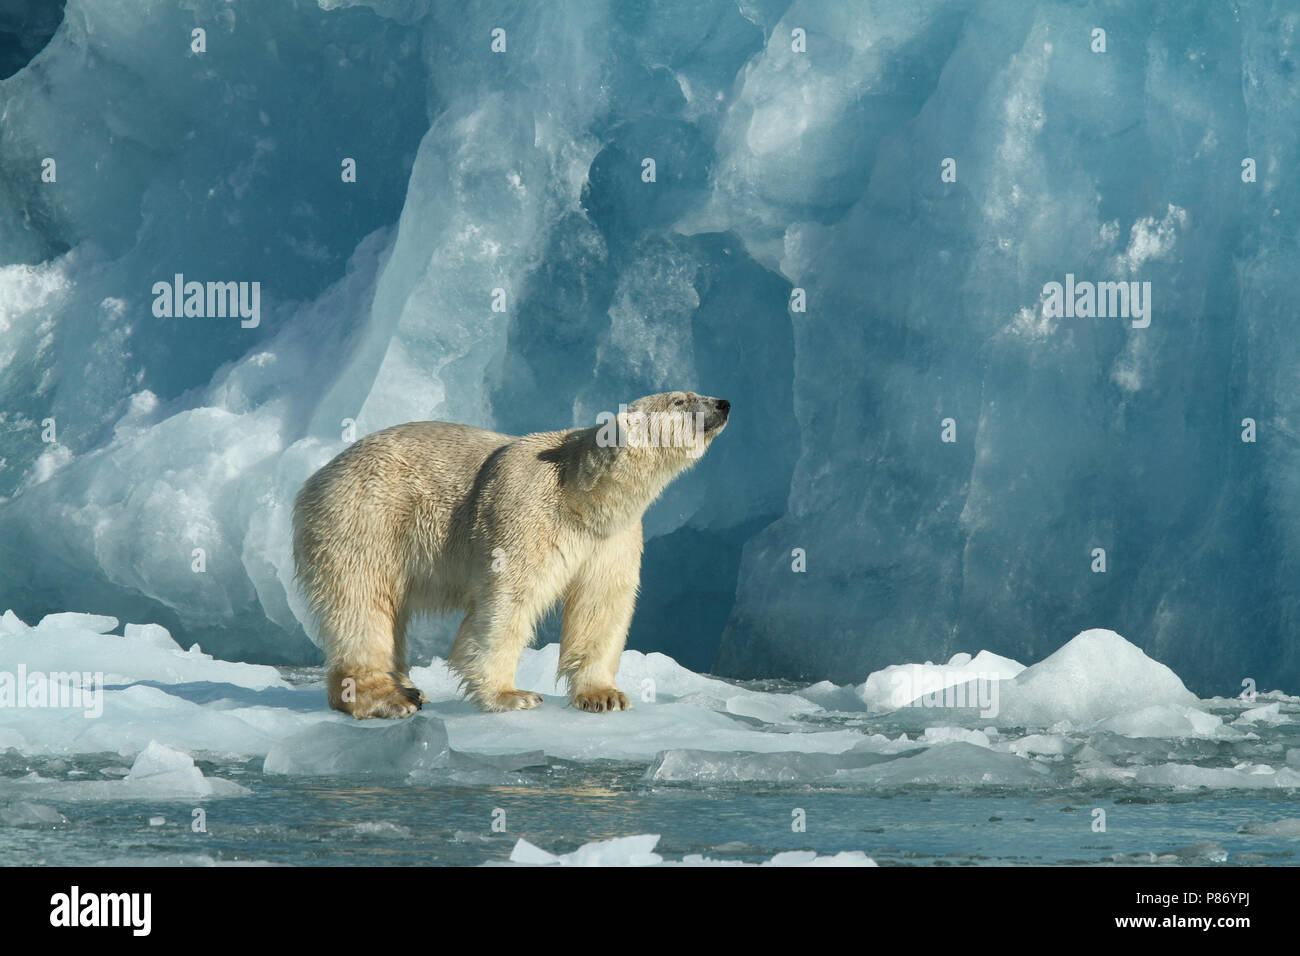 Balades IJsbeer op ijs ours polaire sur la glace Banque D'Images